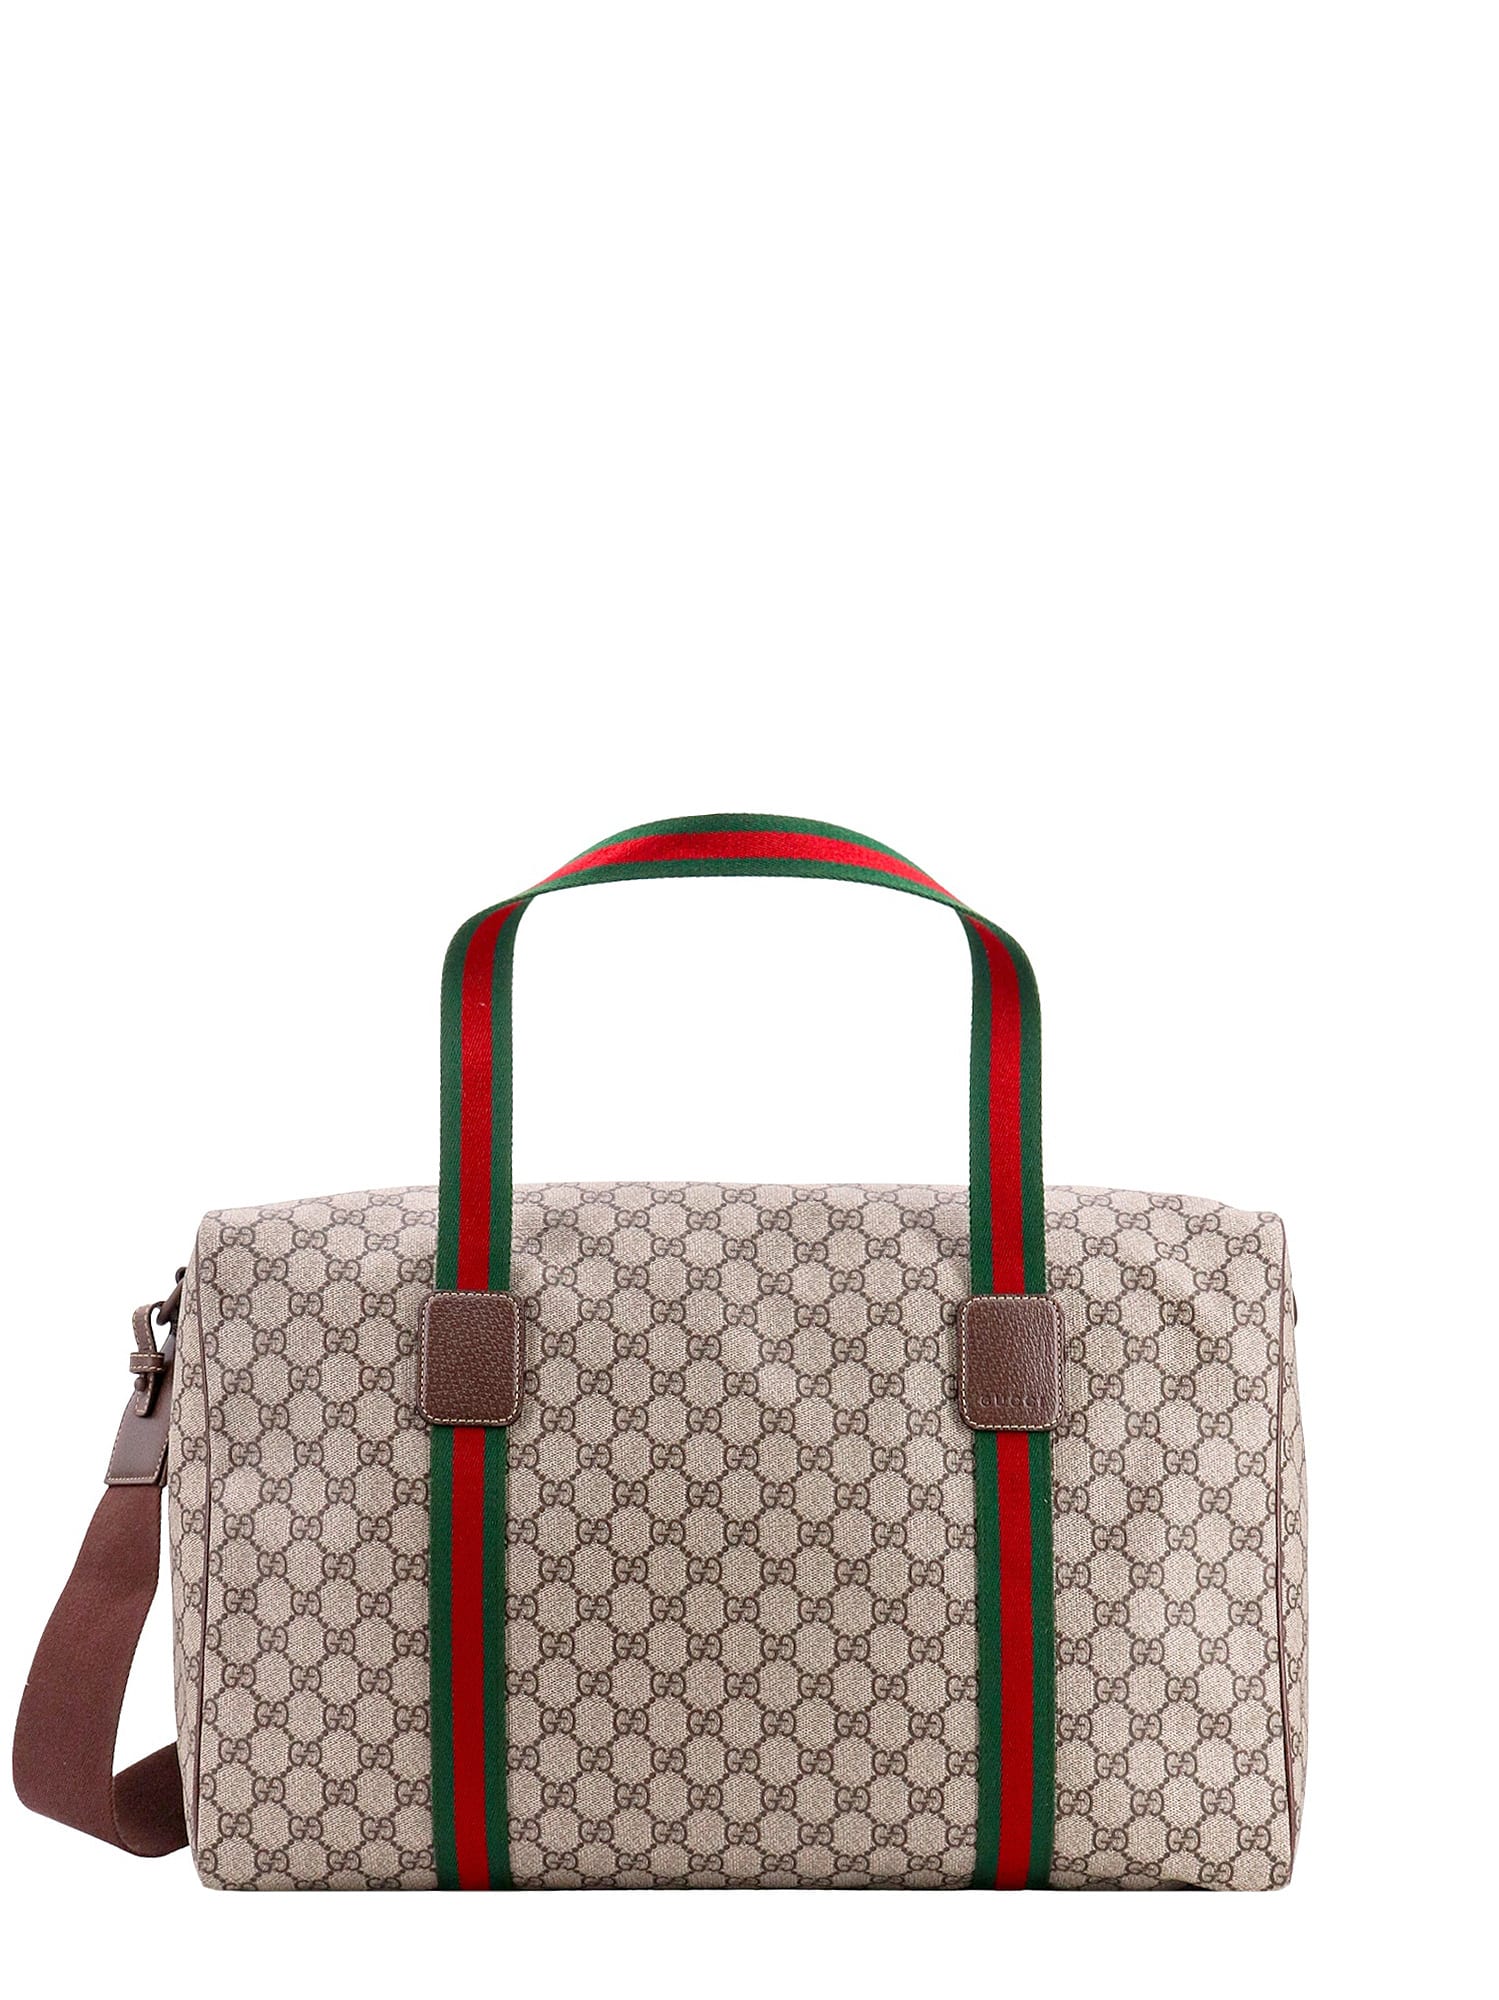 Gucci Duffle Bag In Beige